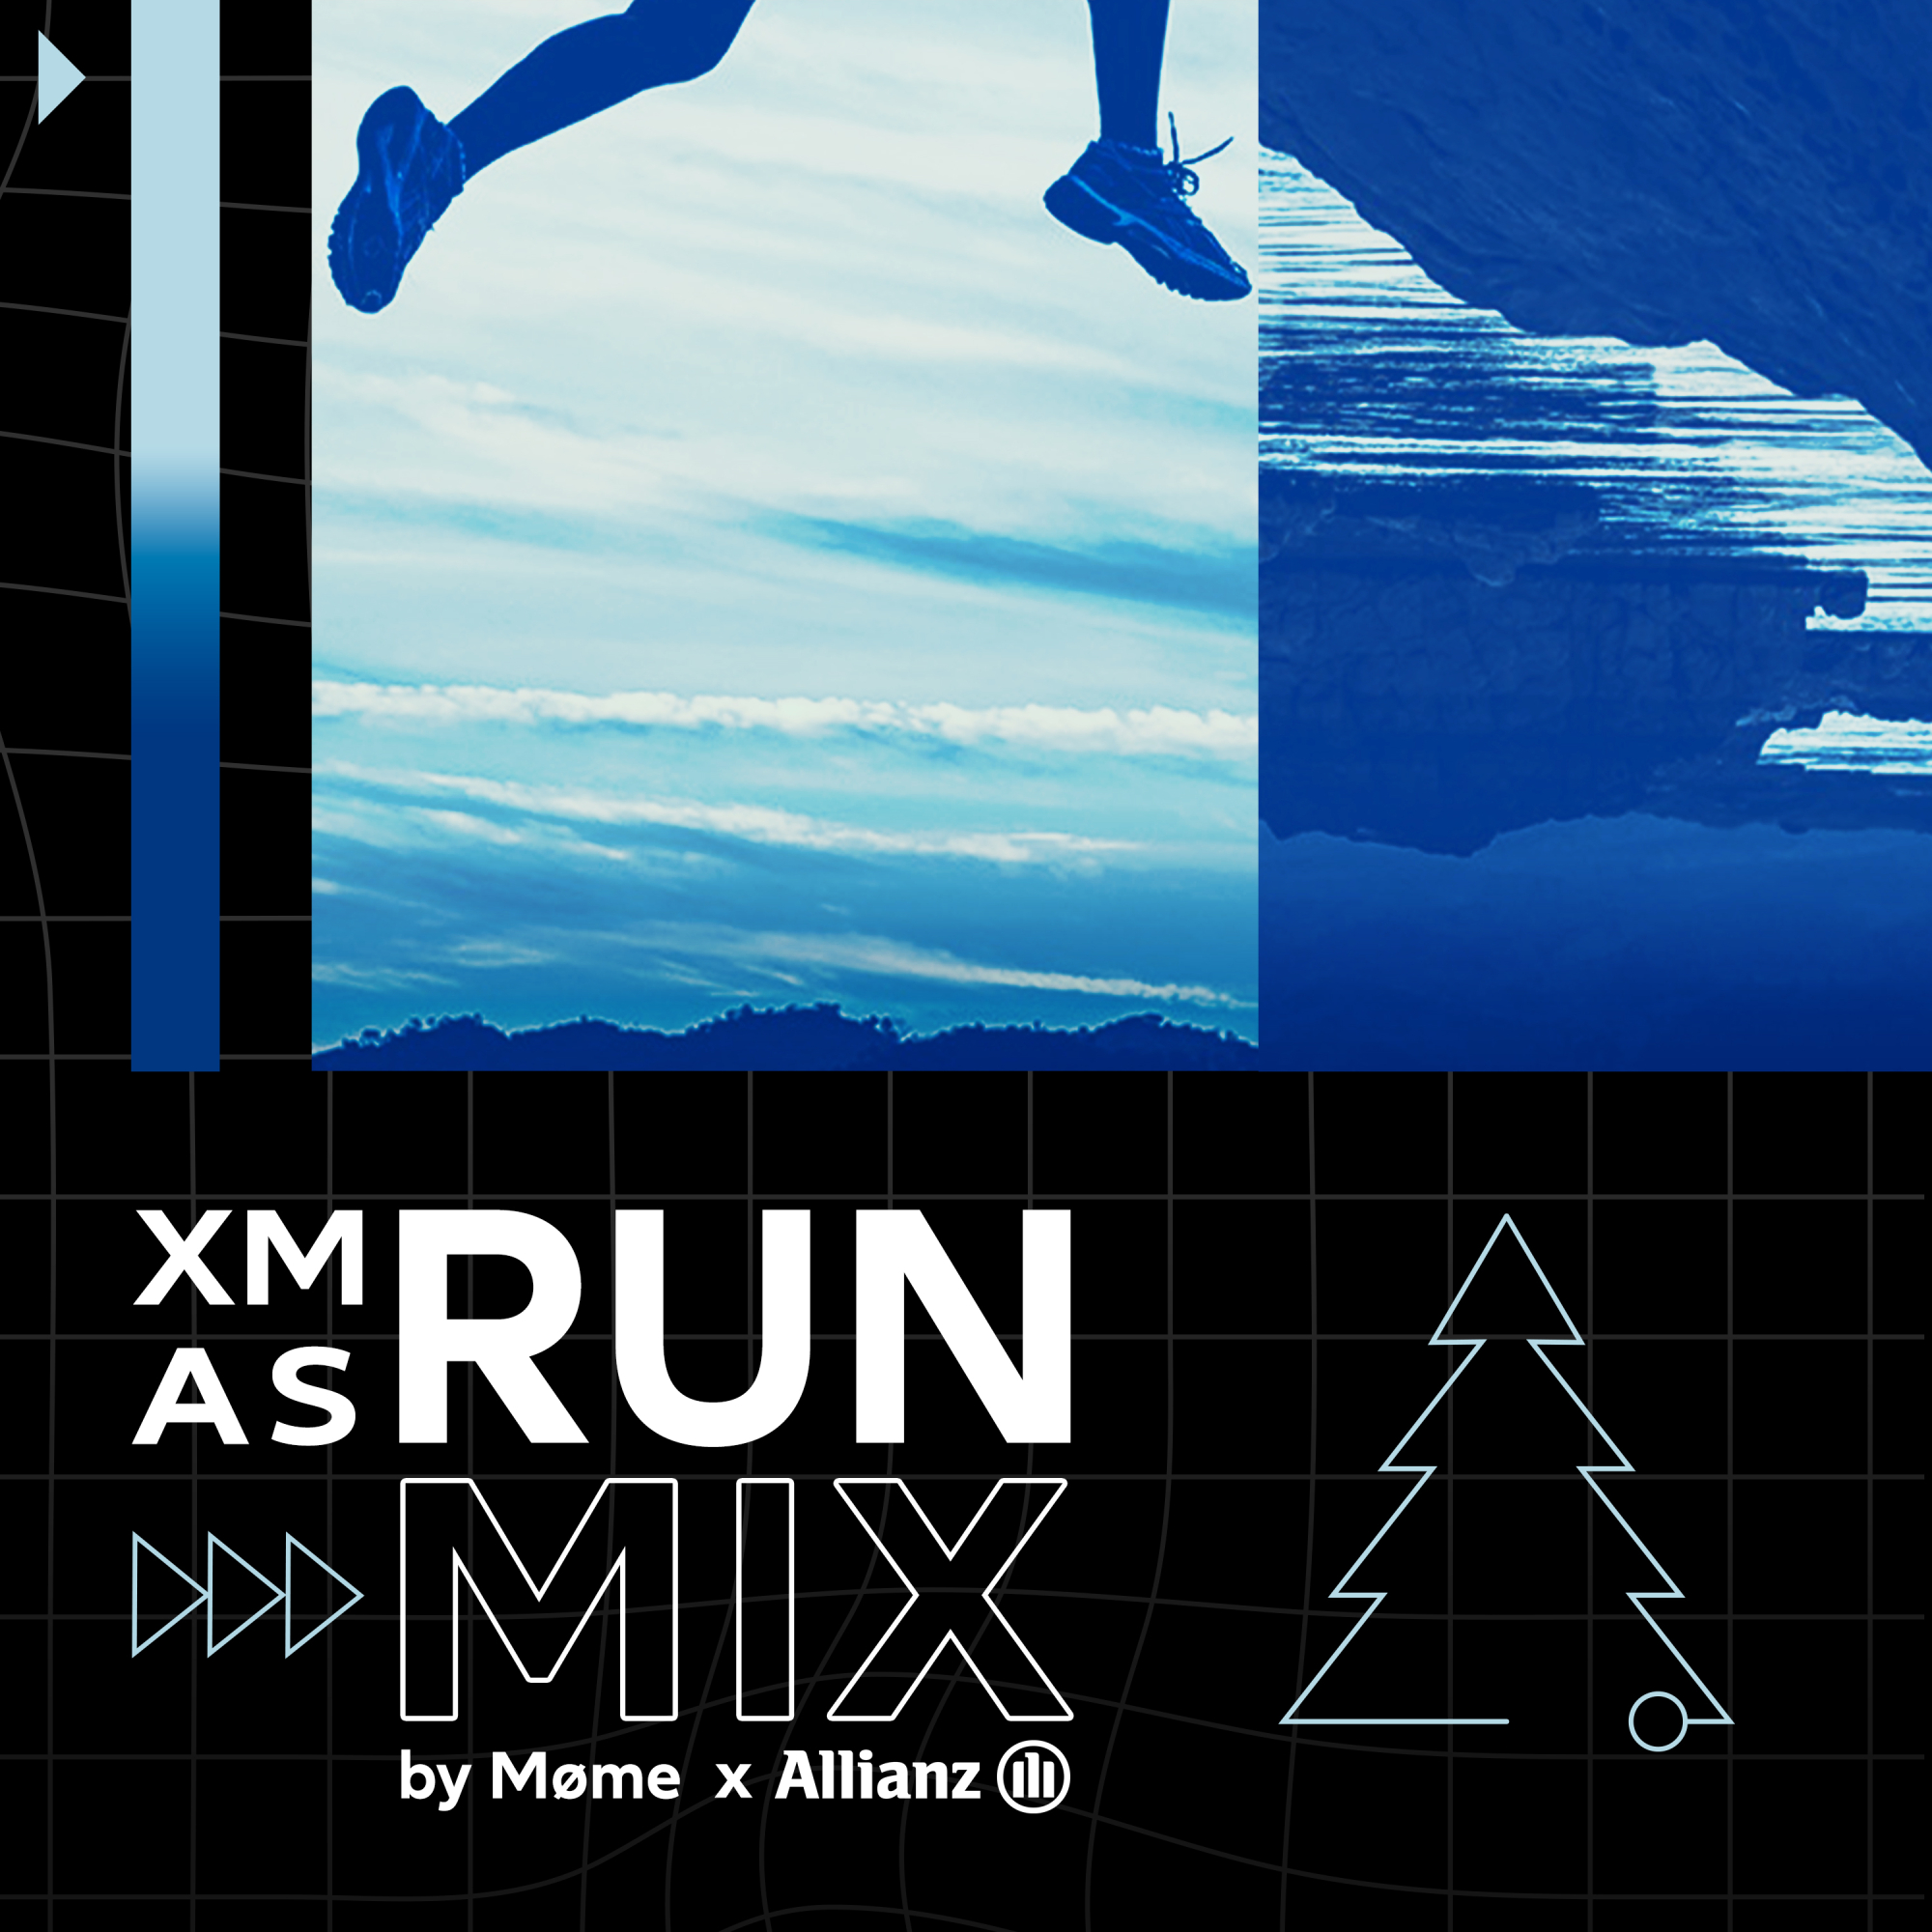 Pour Noël, Allianz France innove avec un remix électro destiné à promouvoir le sport-santé :  ‘Xmas Runmix’ par MØME